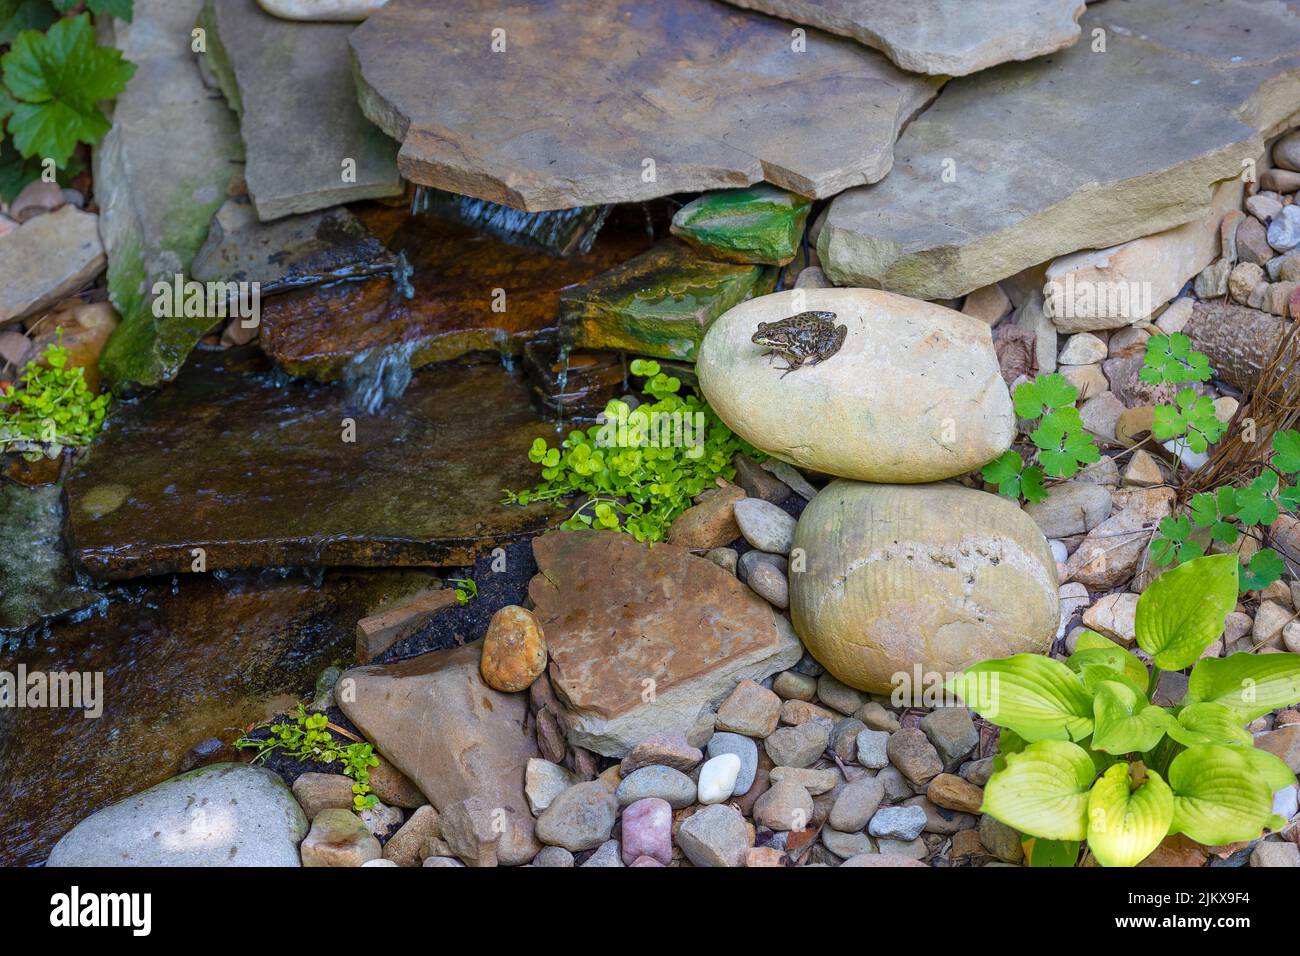 Une petite grenouille se trouve sur un rocher à côté d'une petite nappe d'eau dans une cour. Banque D'Images